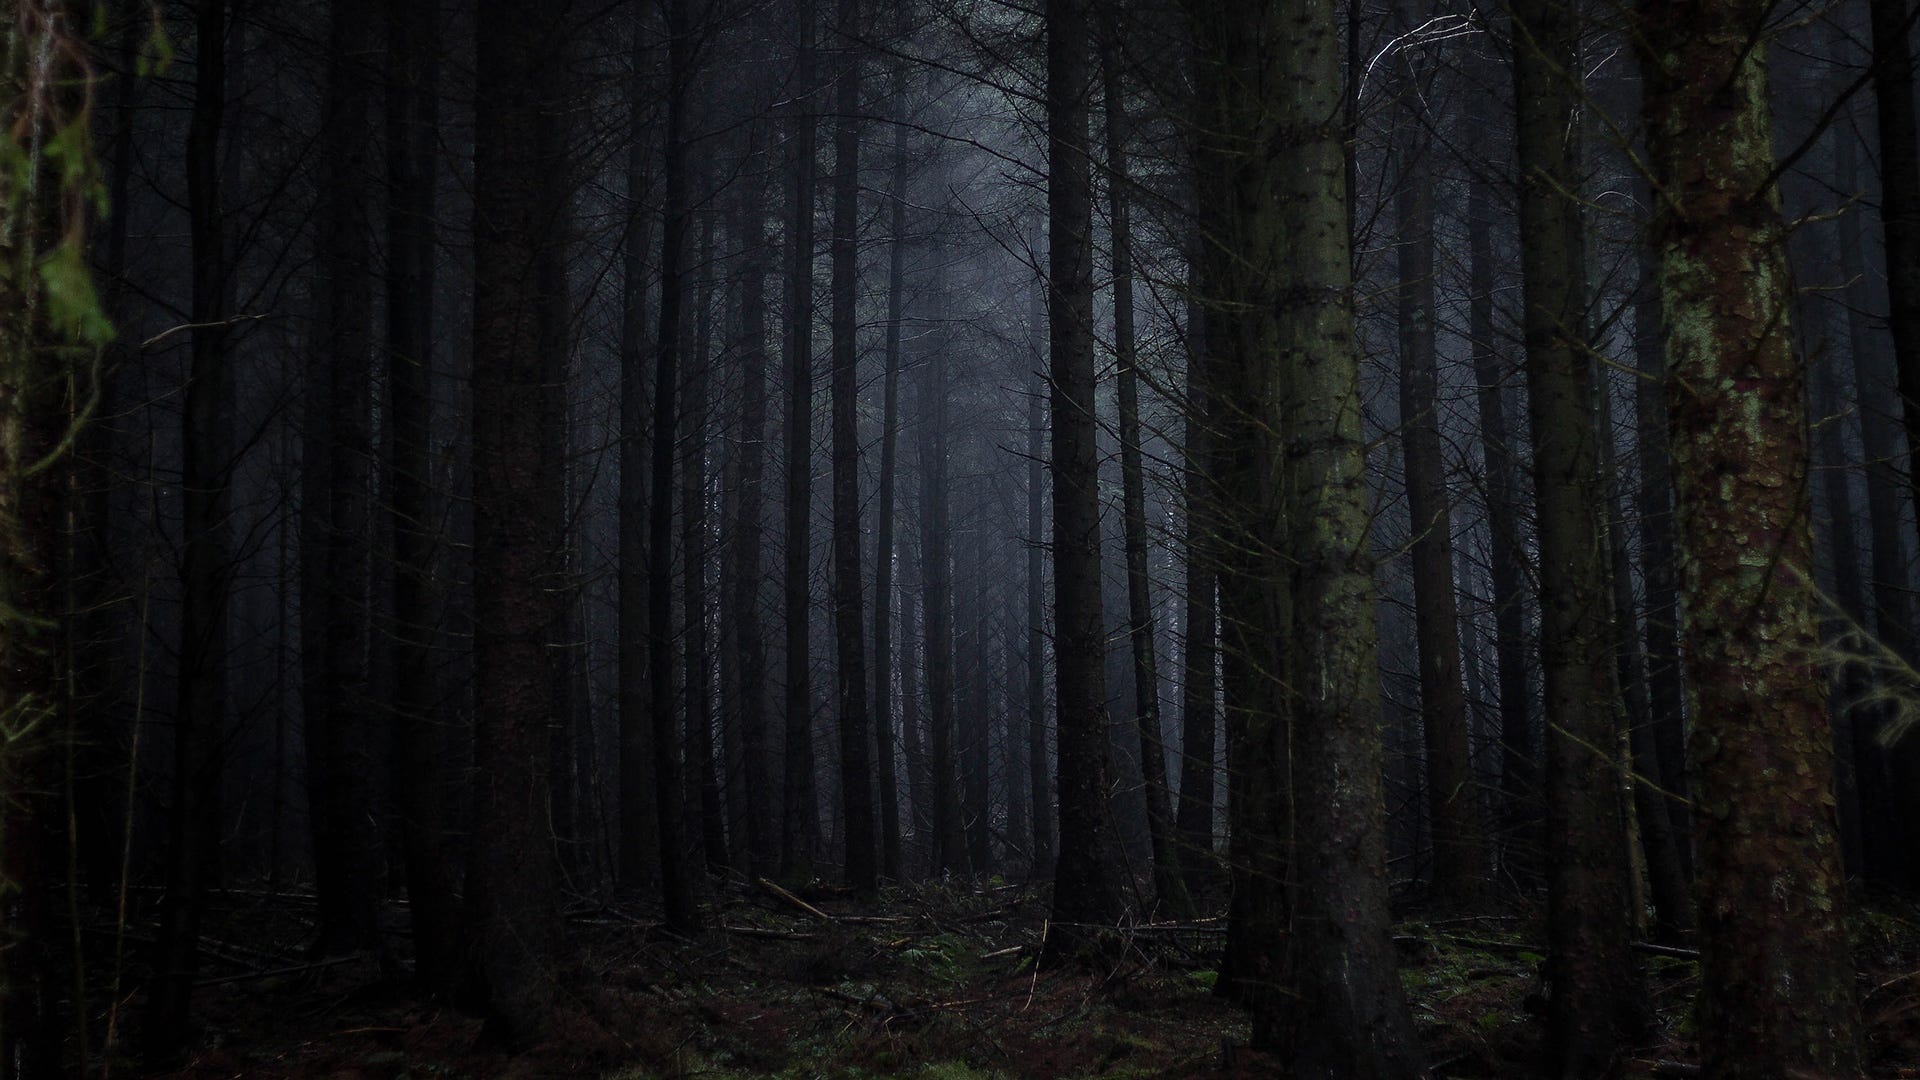 An eerie dark forest.